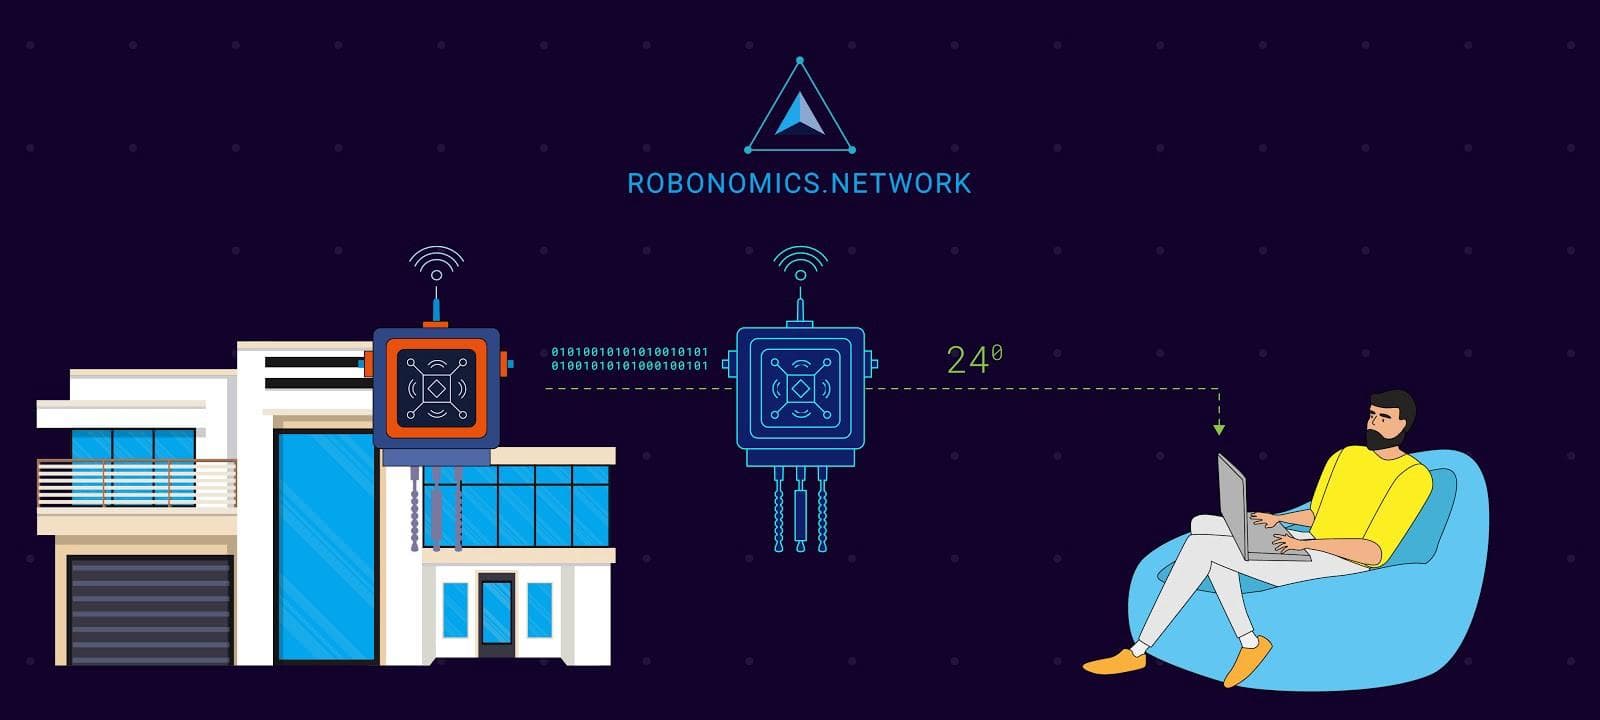 Robonomics Network